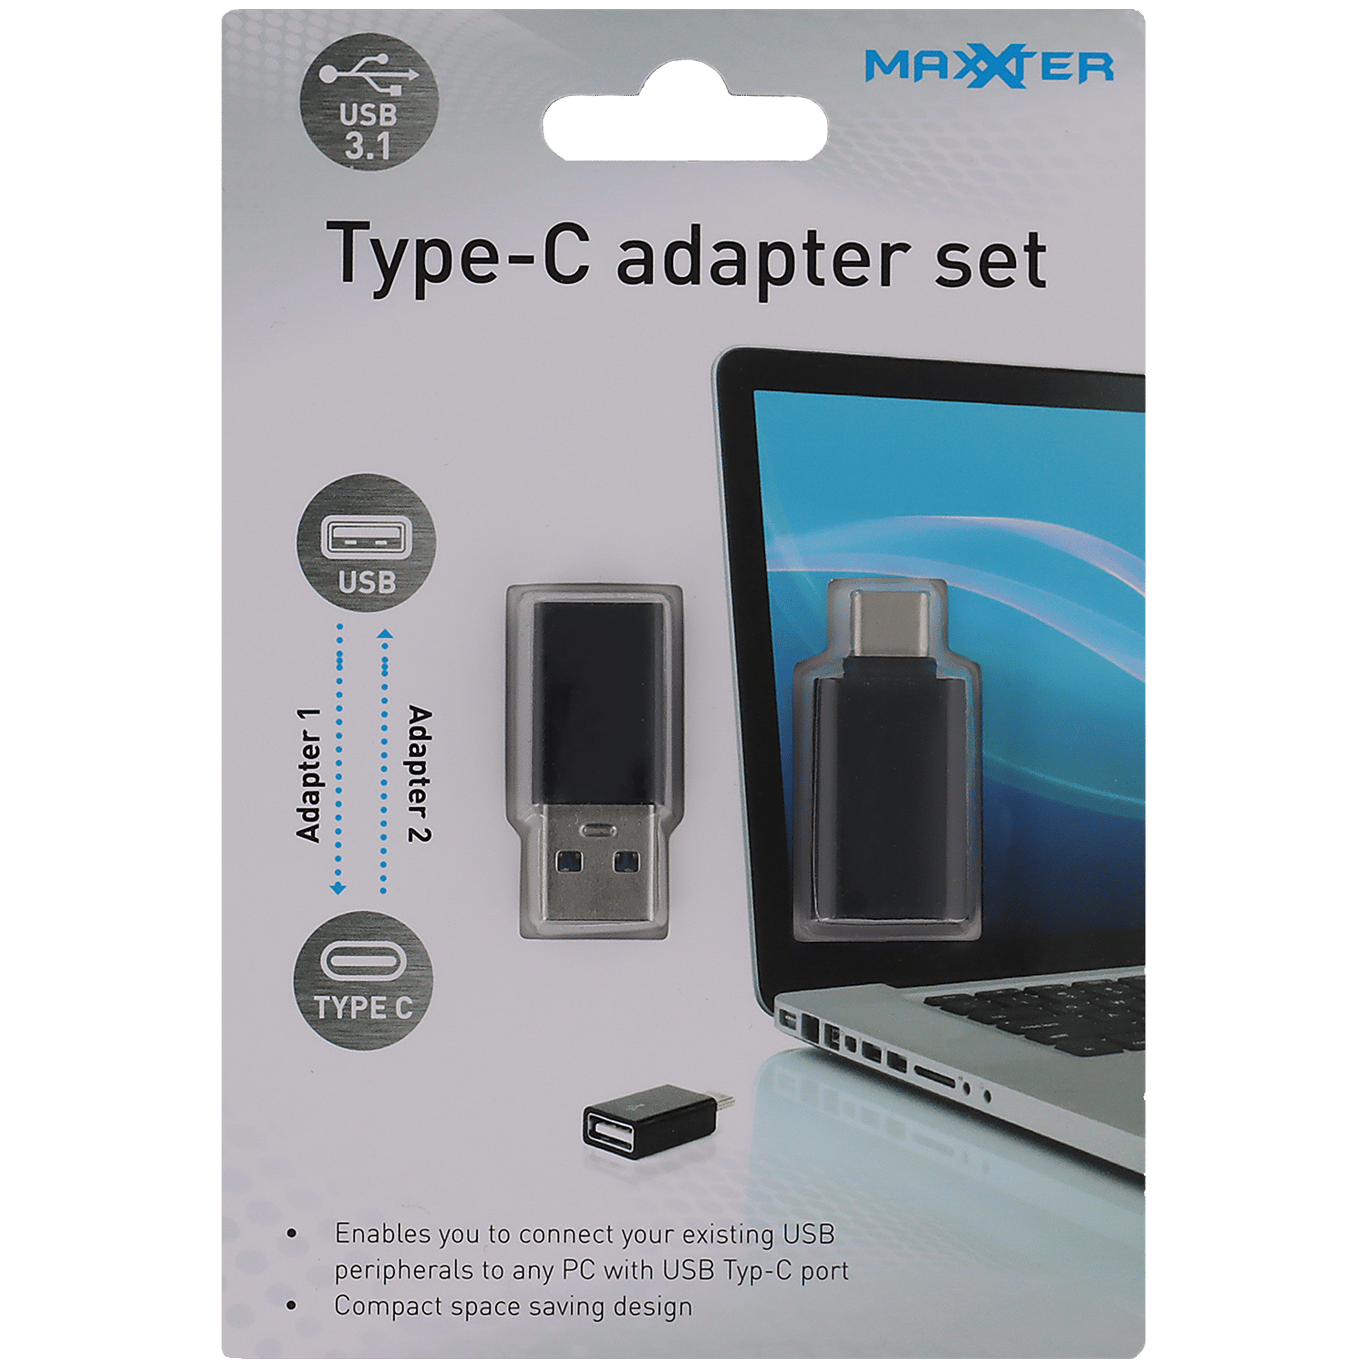 herten Verloren hart groep Maxxter USB type-C adapterset | Action.com